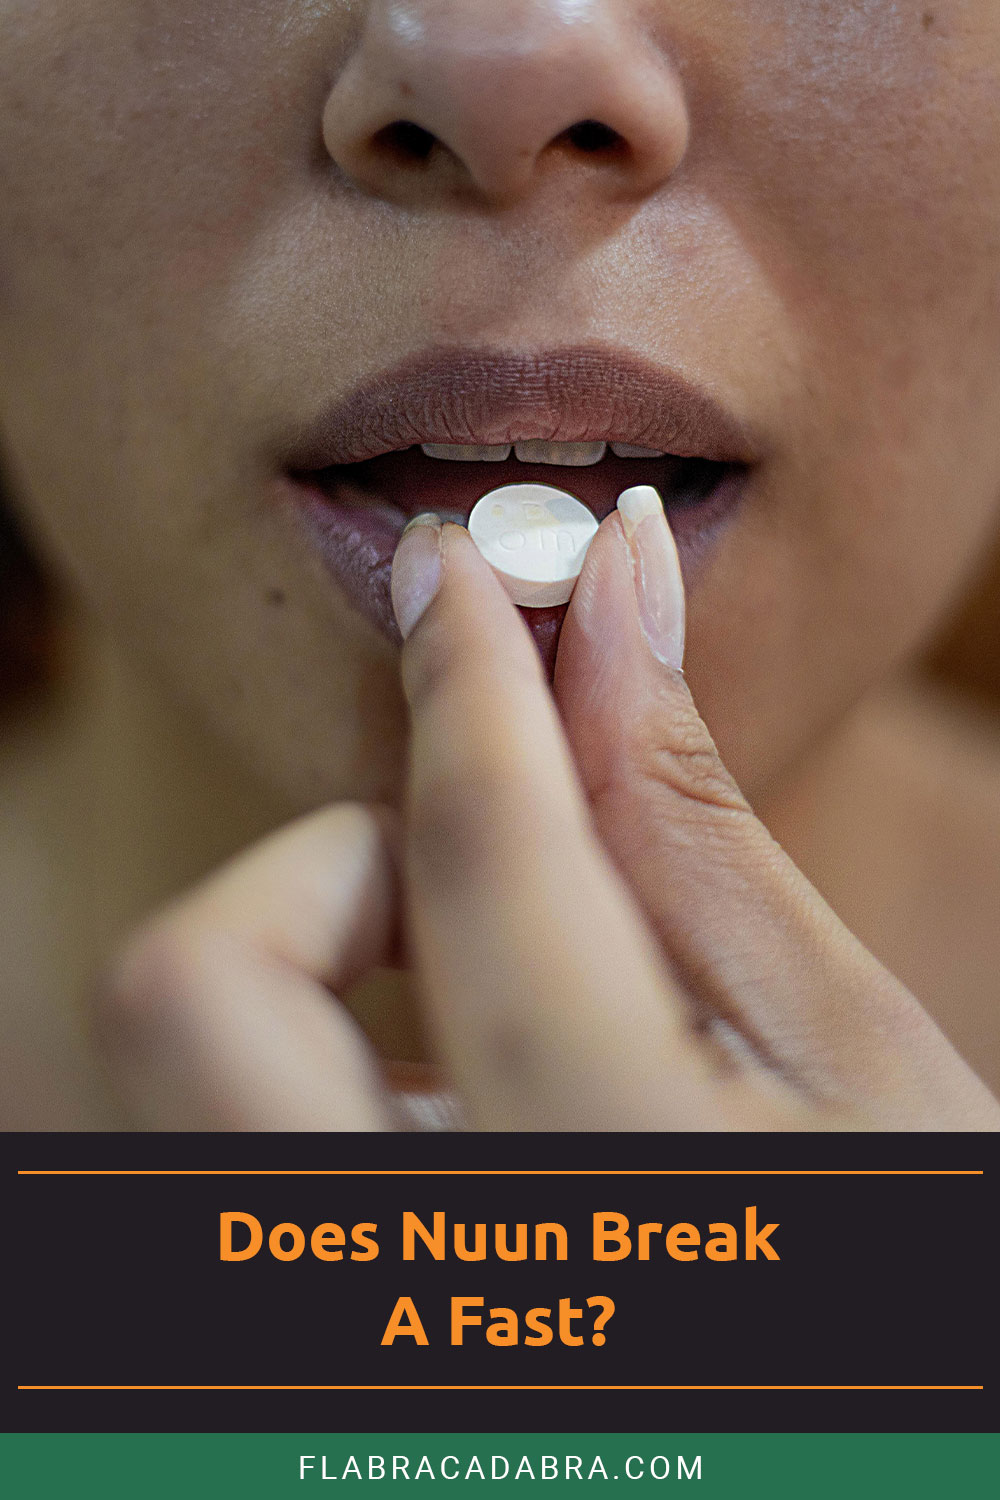 Does Nuun Break A Fast?